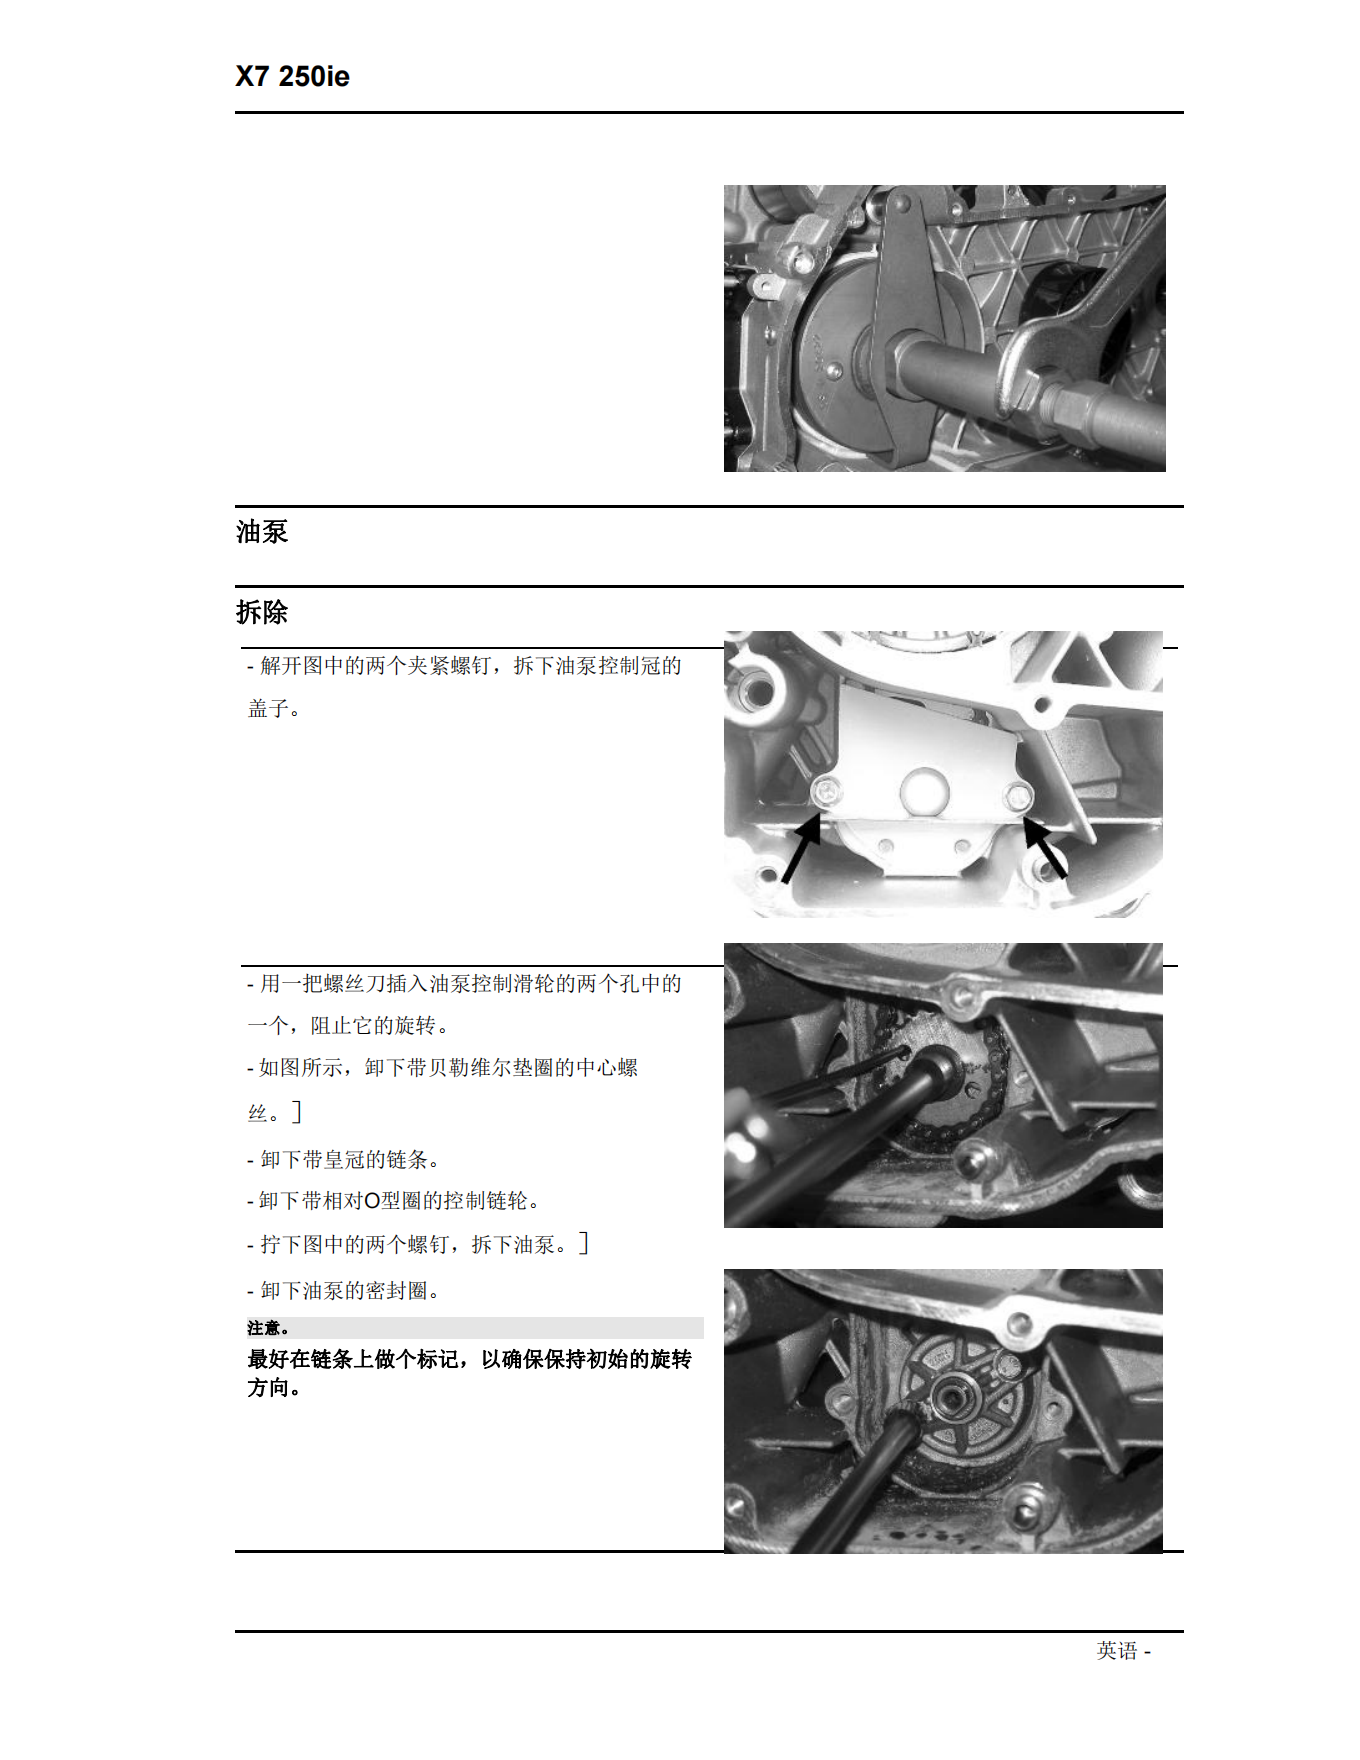 简体中文2007年比亚乔x7维修手册X7 250ie维修手册插图3